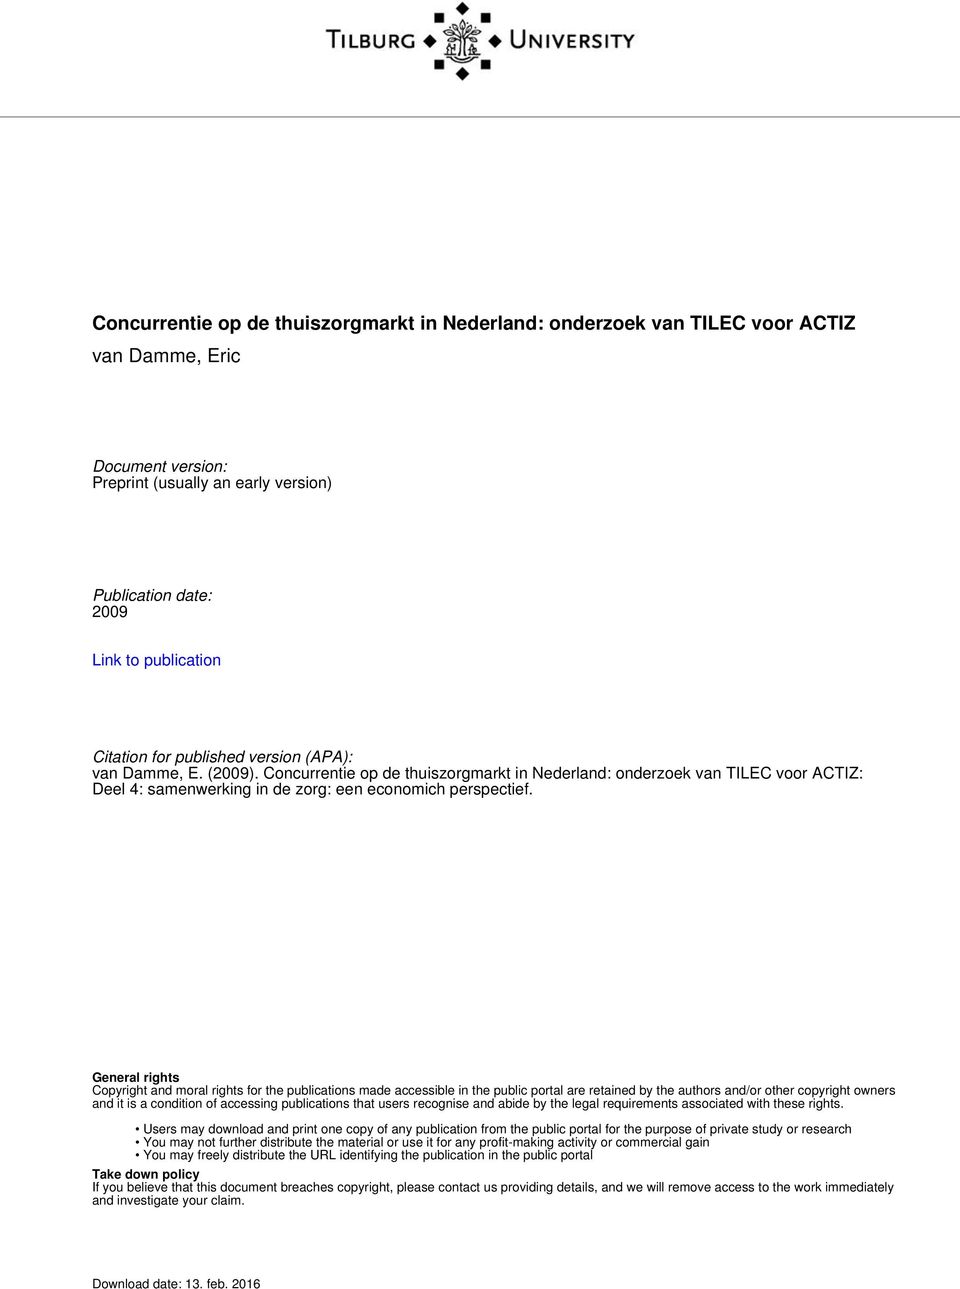 Concurrentie op de thuiszorgmarkt in Nederland: onderzoek van TILEC voor ACTIZ: Deel 4: samenwerking in de zorg: een economich perspectief.